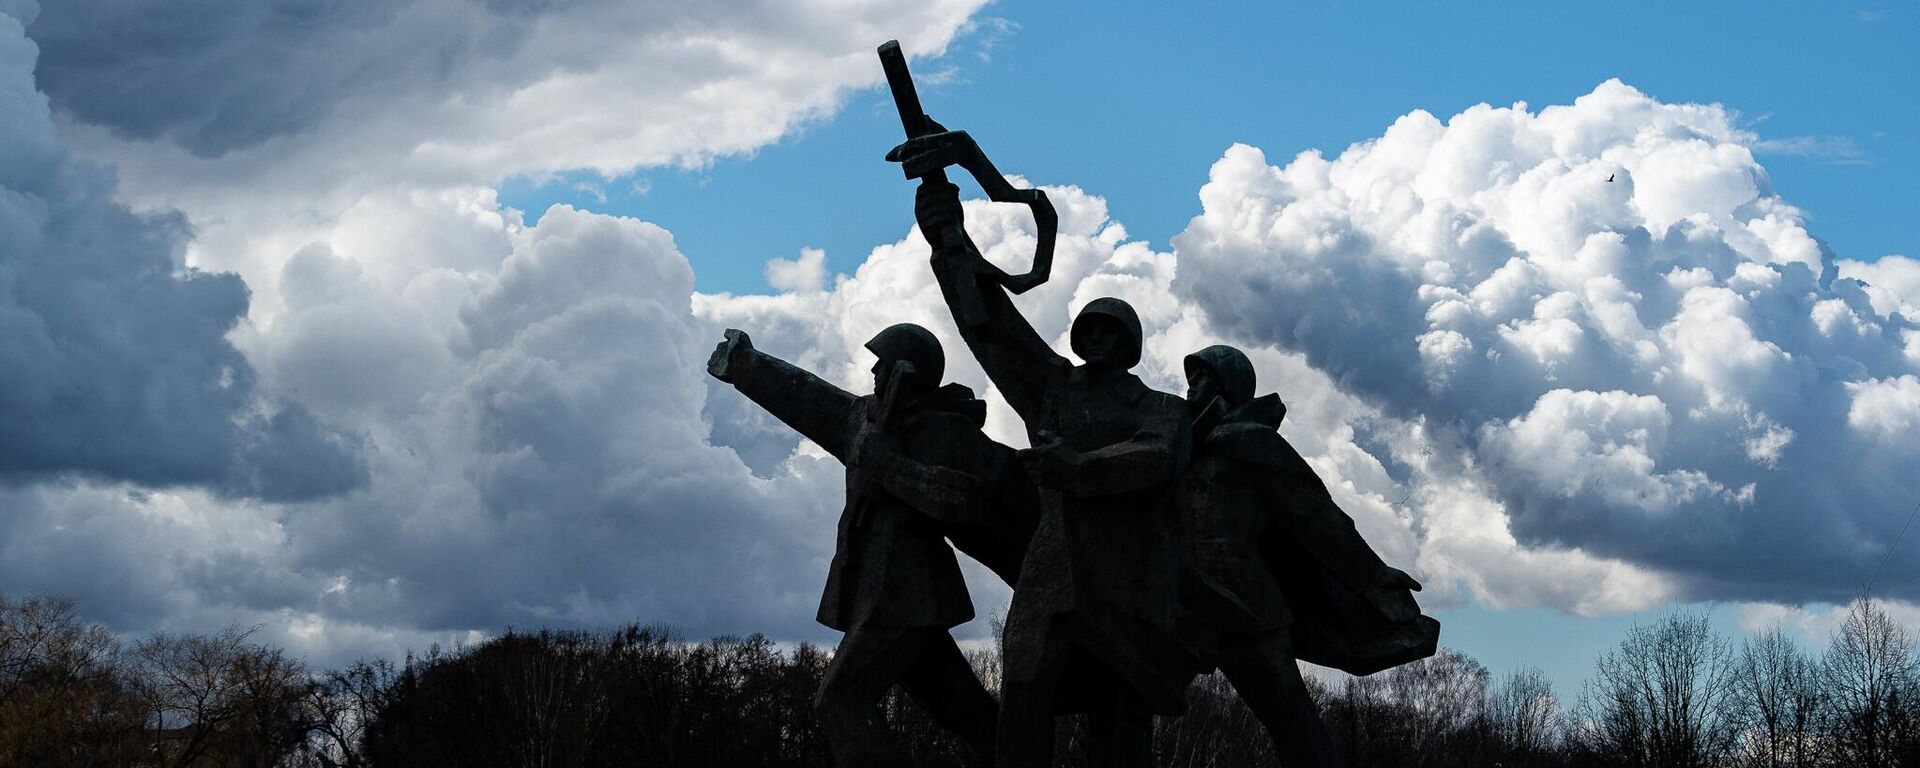 11 апреля мэр Риги принял решение оградить территорию памятника Освободителям Риги в Пардаугаве - Sputnik Латвия, 1920, 12.04.2022